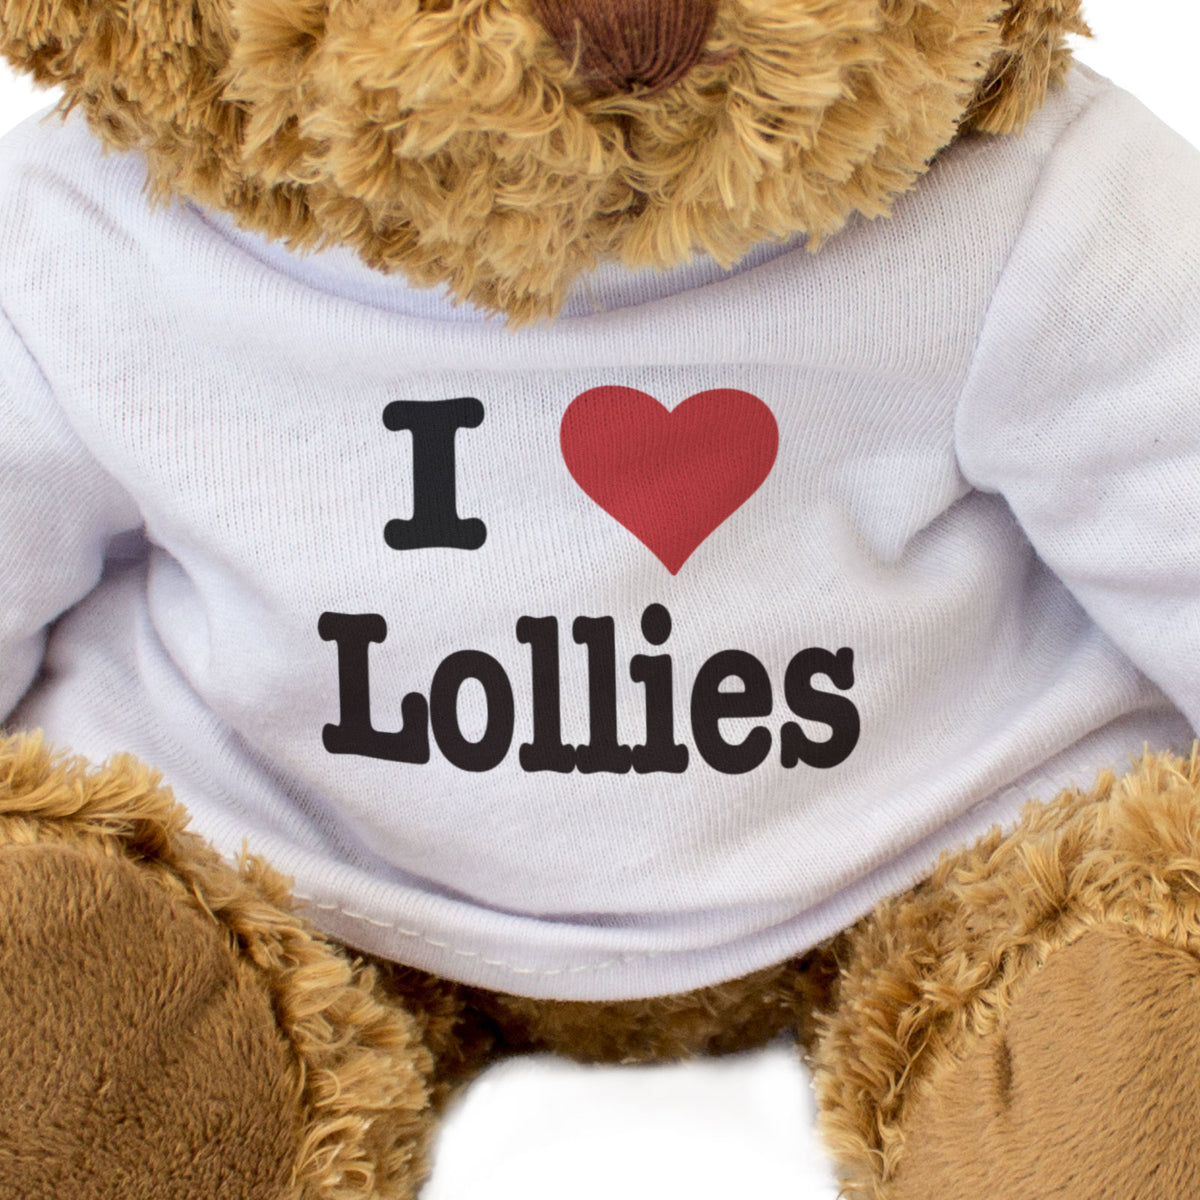 I Love Lollies - Teddy Bear